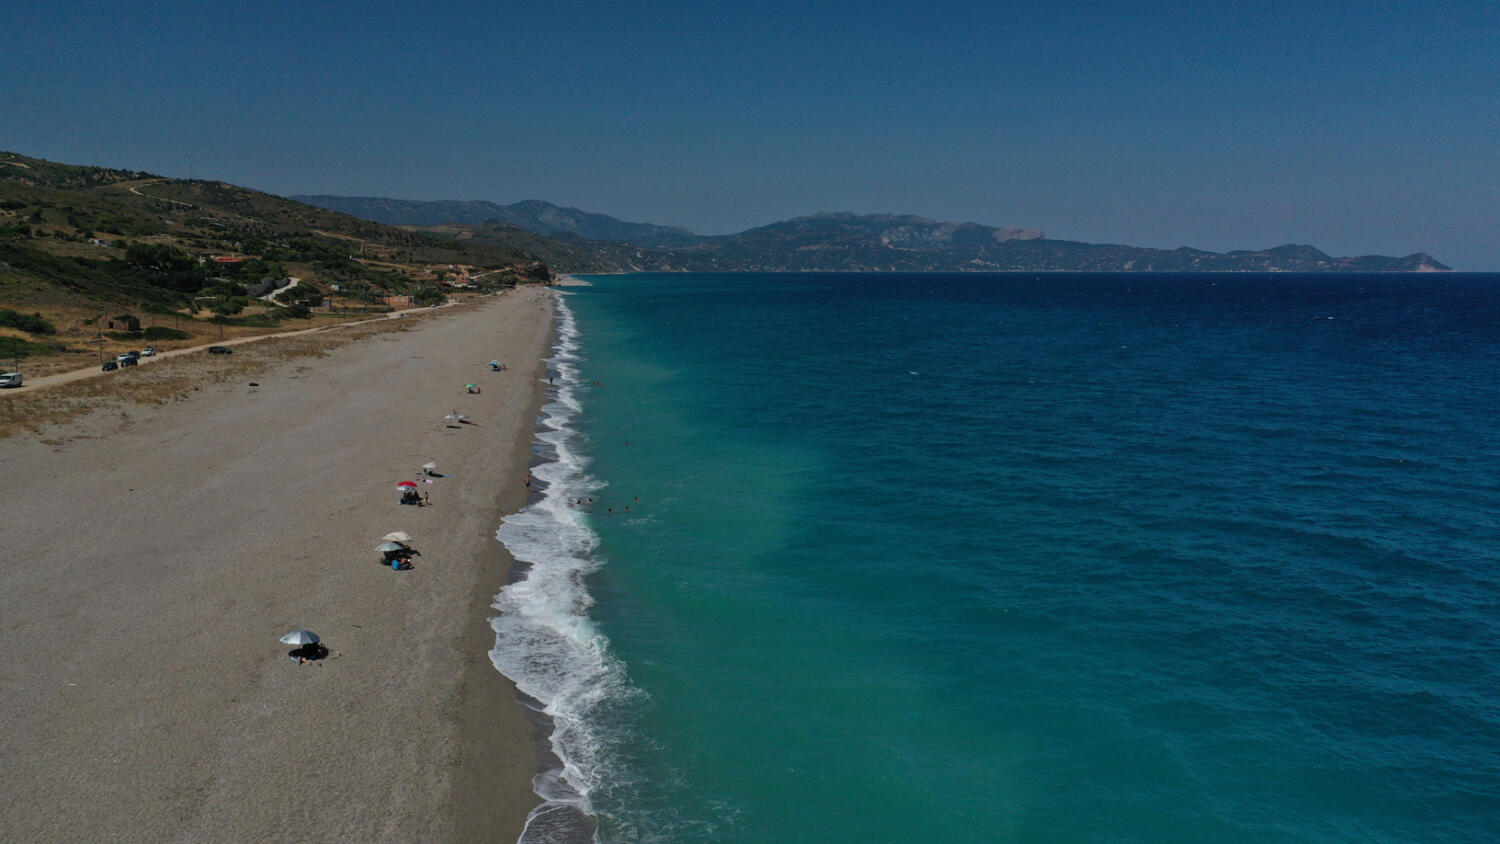 Παραλία Άγιος Μερκούριος, χωριό Οκτωνιά. Φωτογραφία: ©Βασίλης Συκάς, για τον Δήμο Κύμης-Αλιβερίου